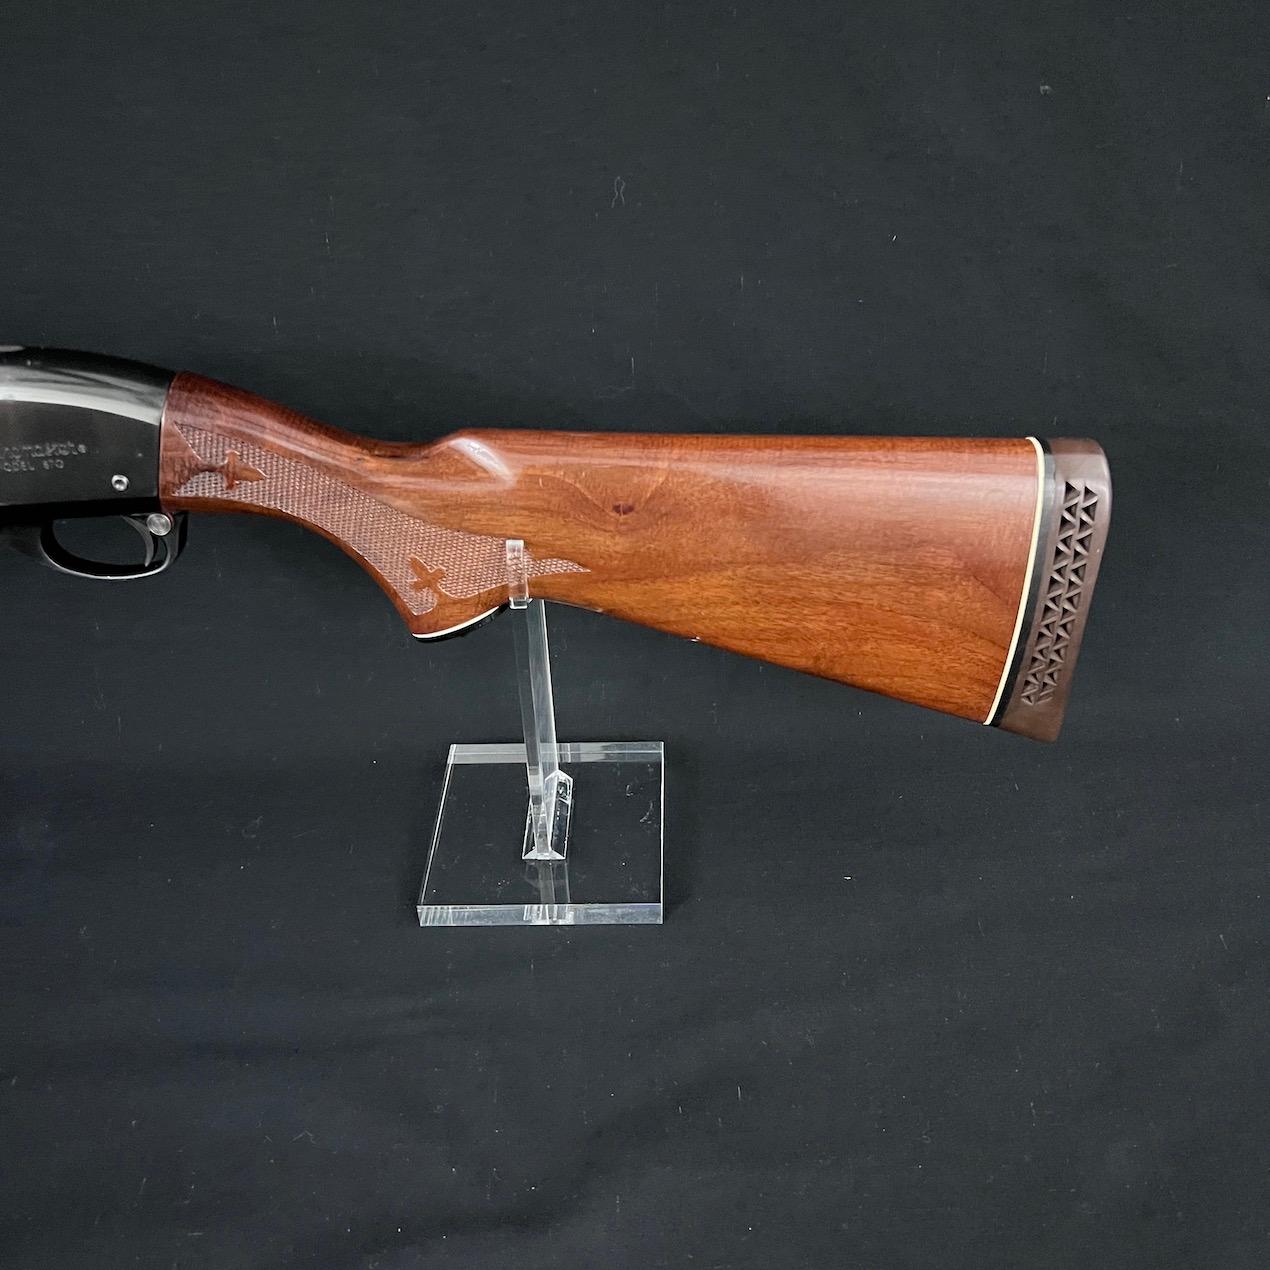 Remington 870 Wingmaster Magnum Pump Action Shotgun